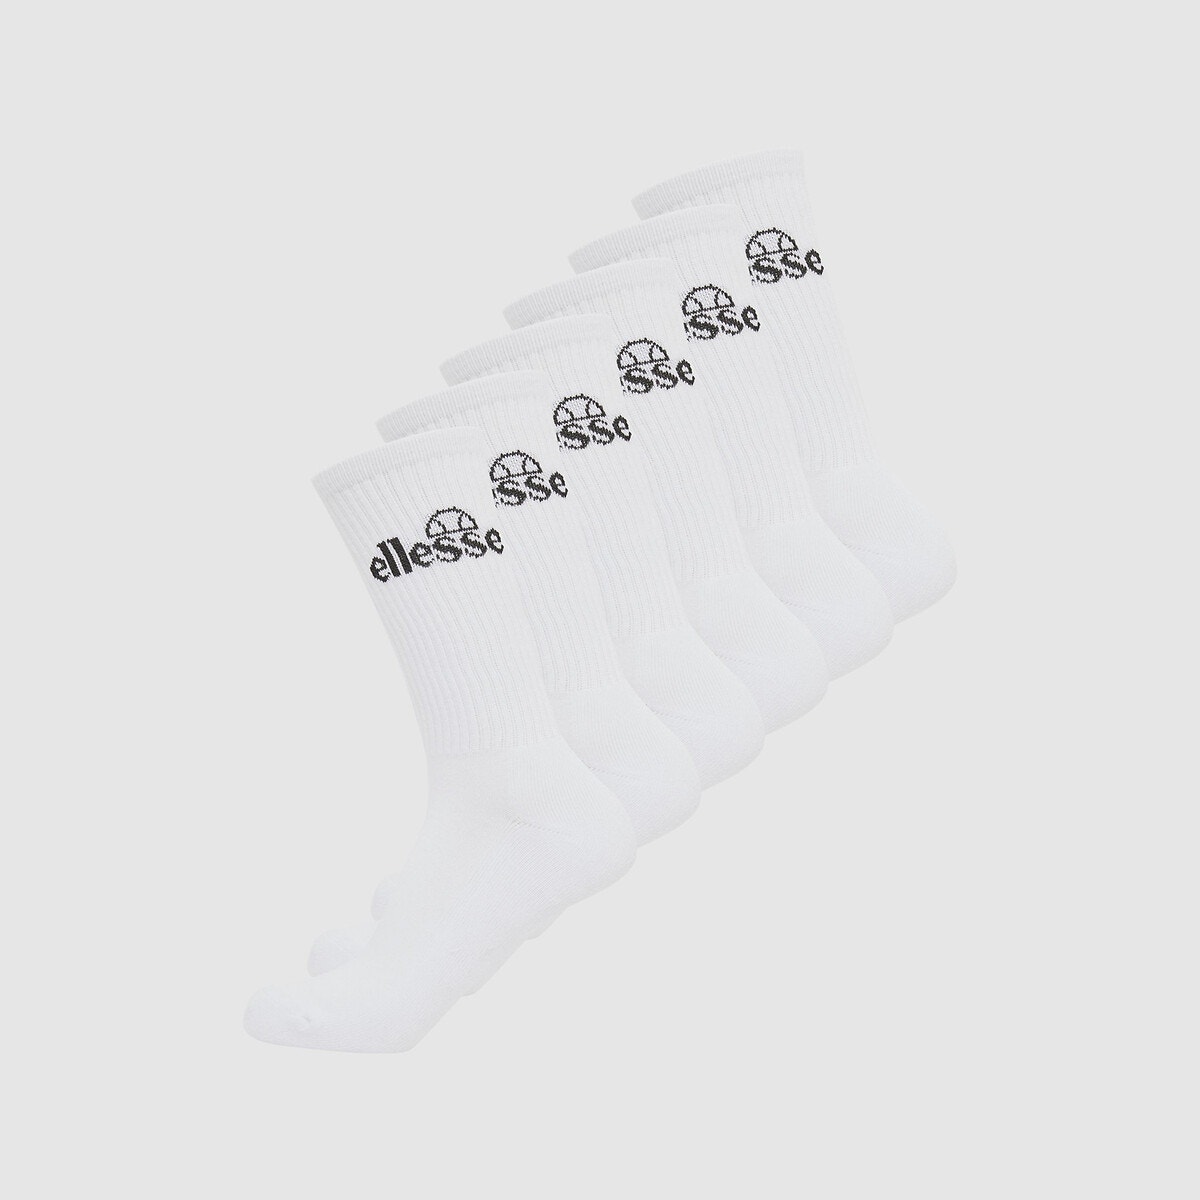 Σετ 6 ζευγάρια κάλτσες, Romuno